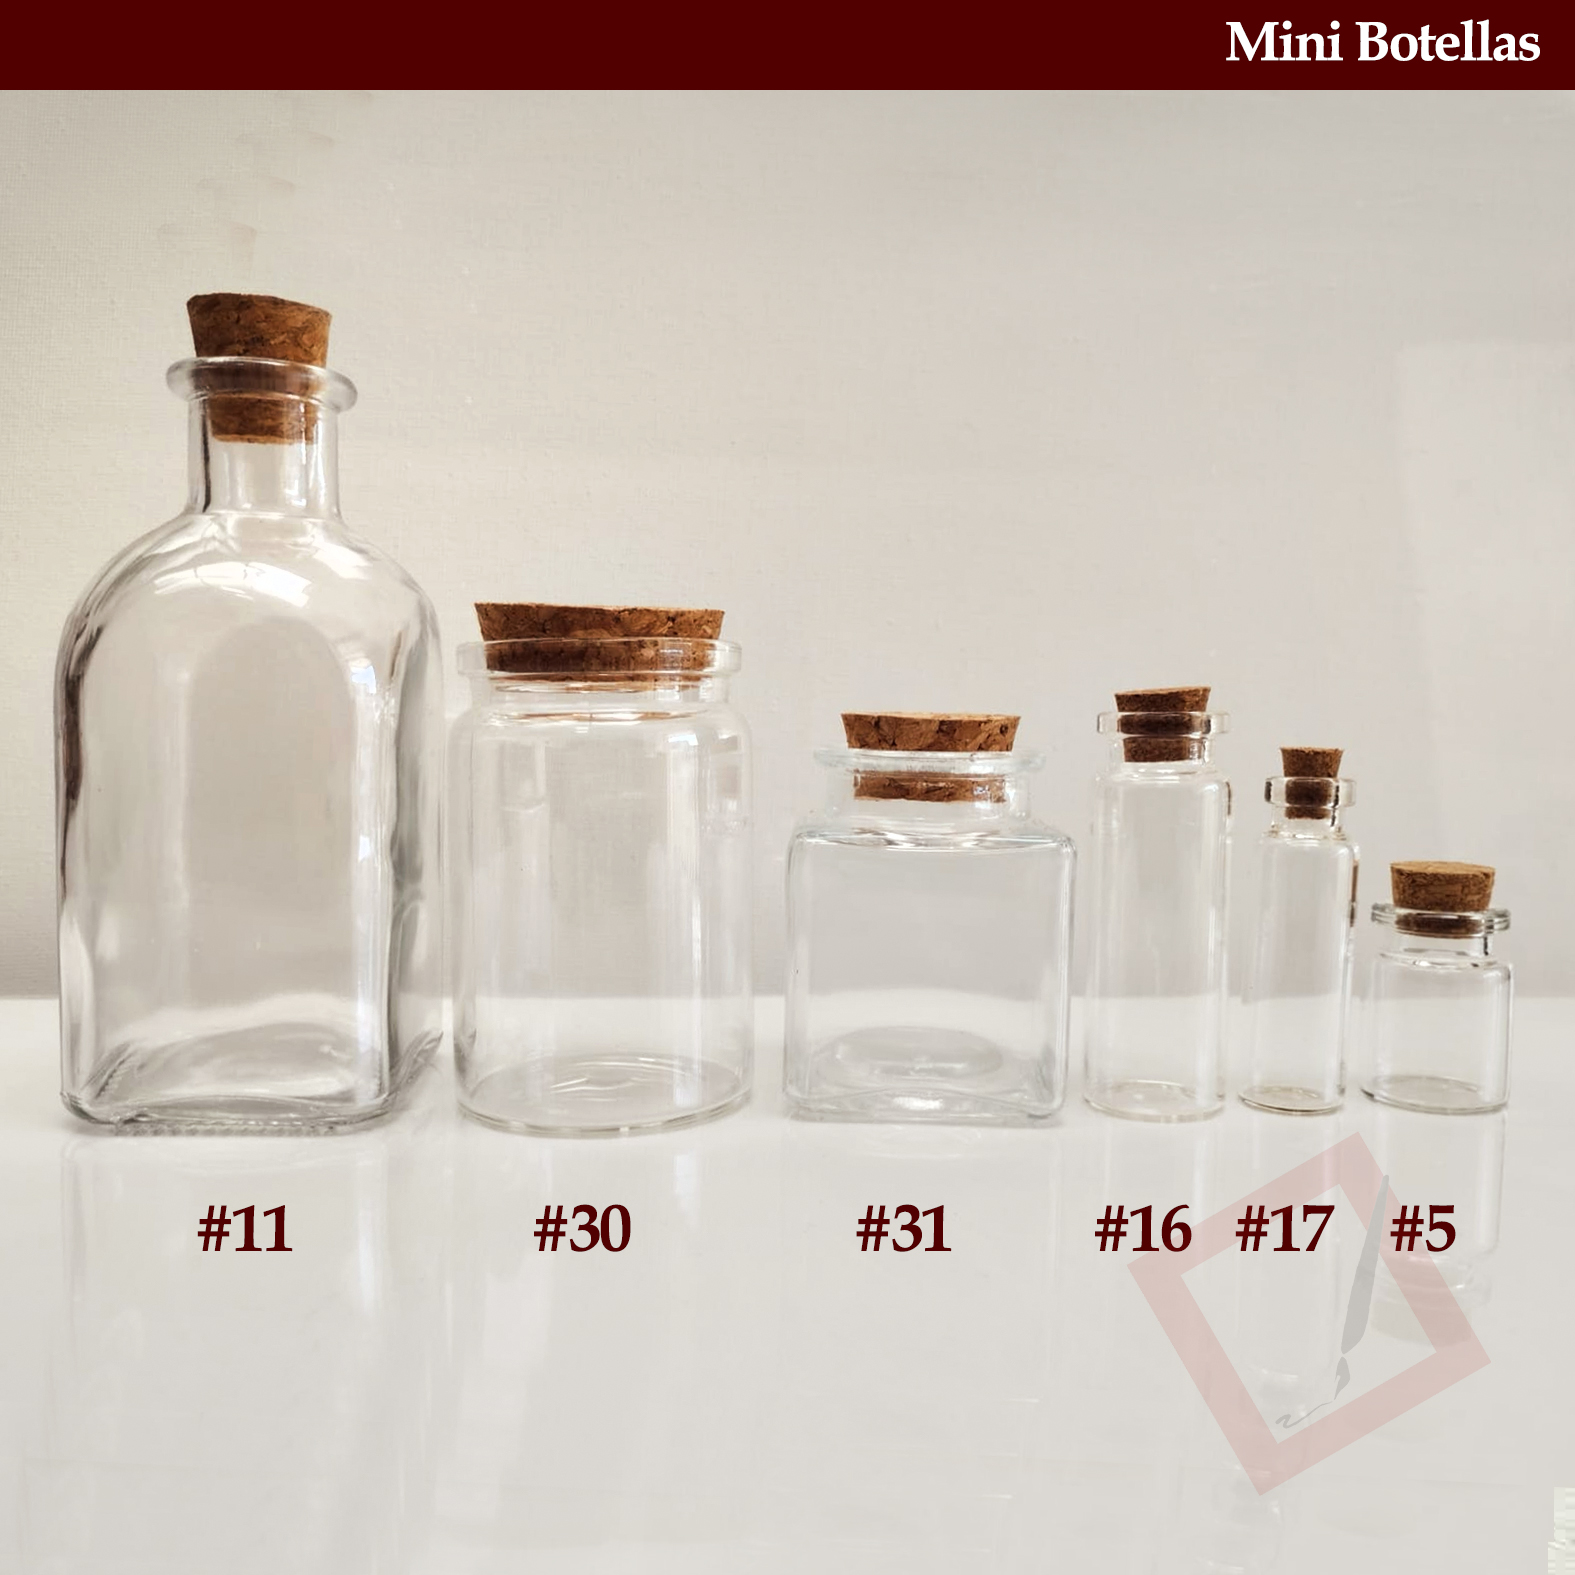 Mini Botellas (Frascos de vidrio con corcho) – PRECISE